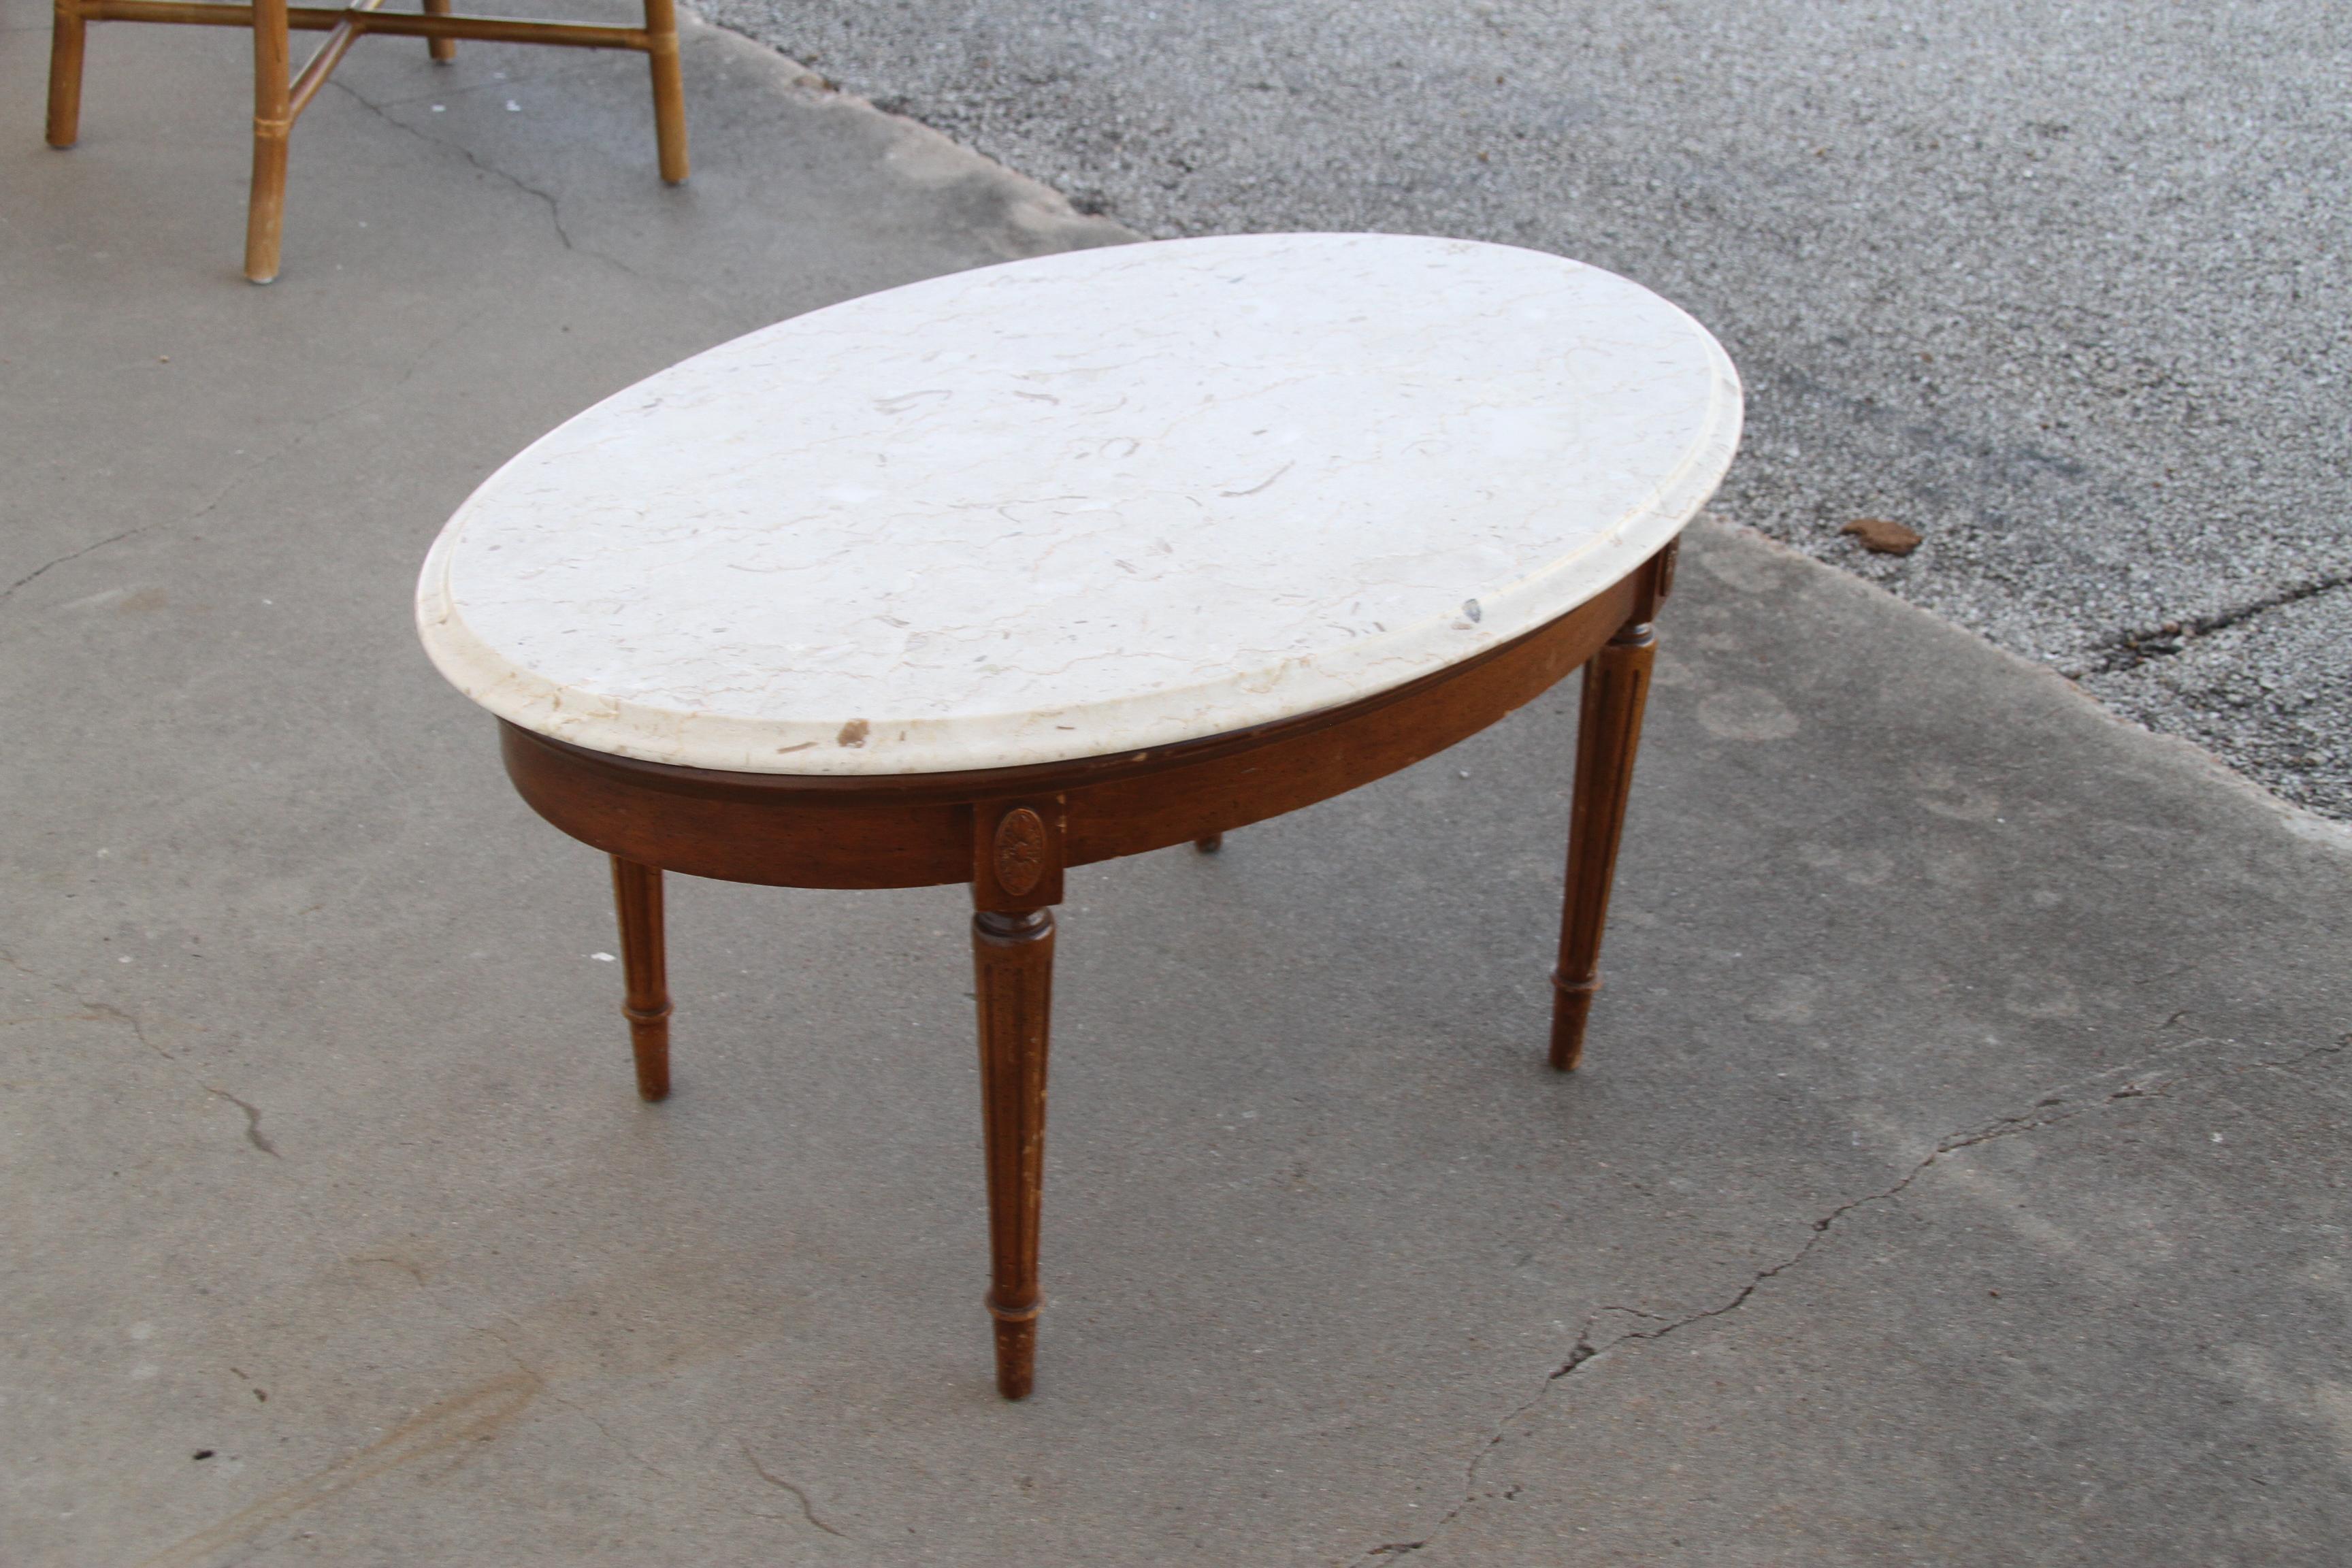 Table basse en marbre de style fédéral

Table ovale en acajou avec plateau en marbre blanc. Pieds sculptés de style fédéral.

Dimensions : 34